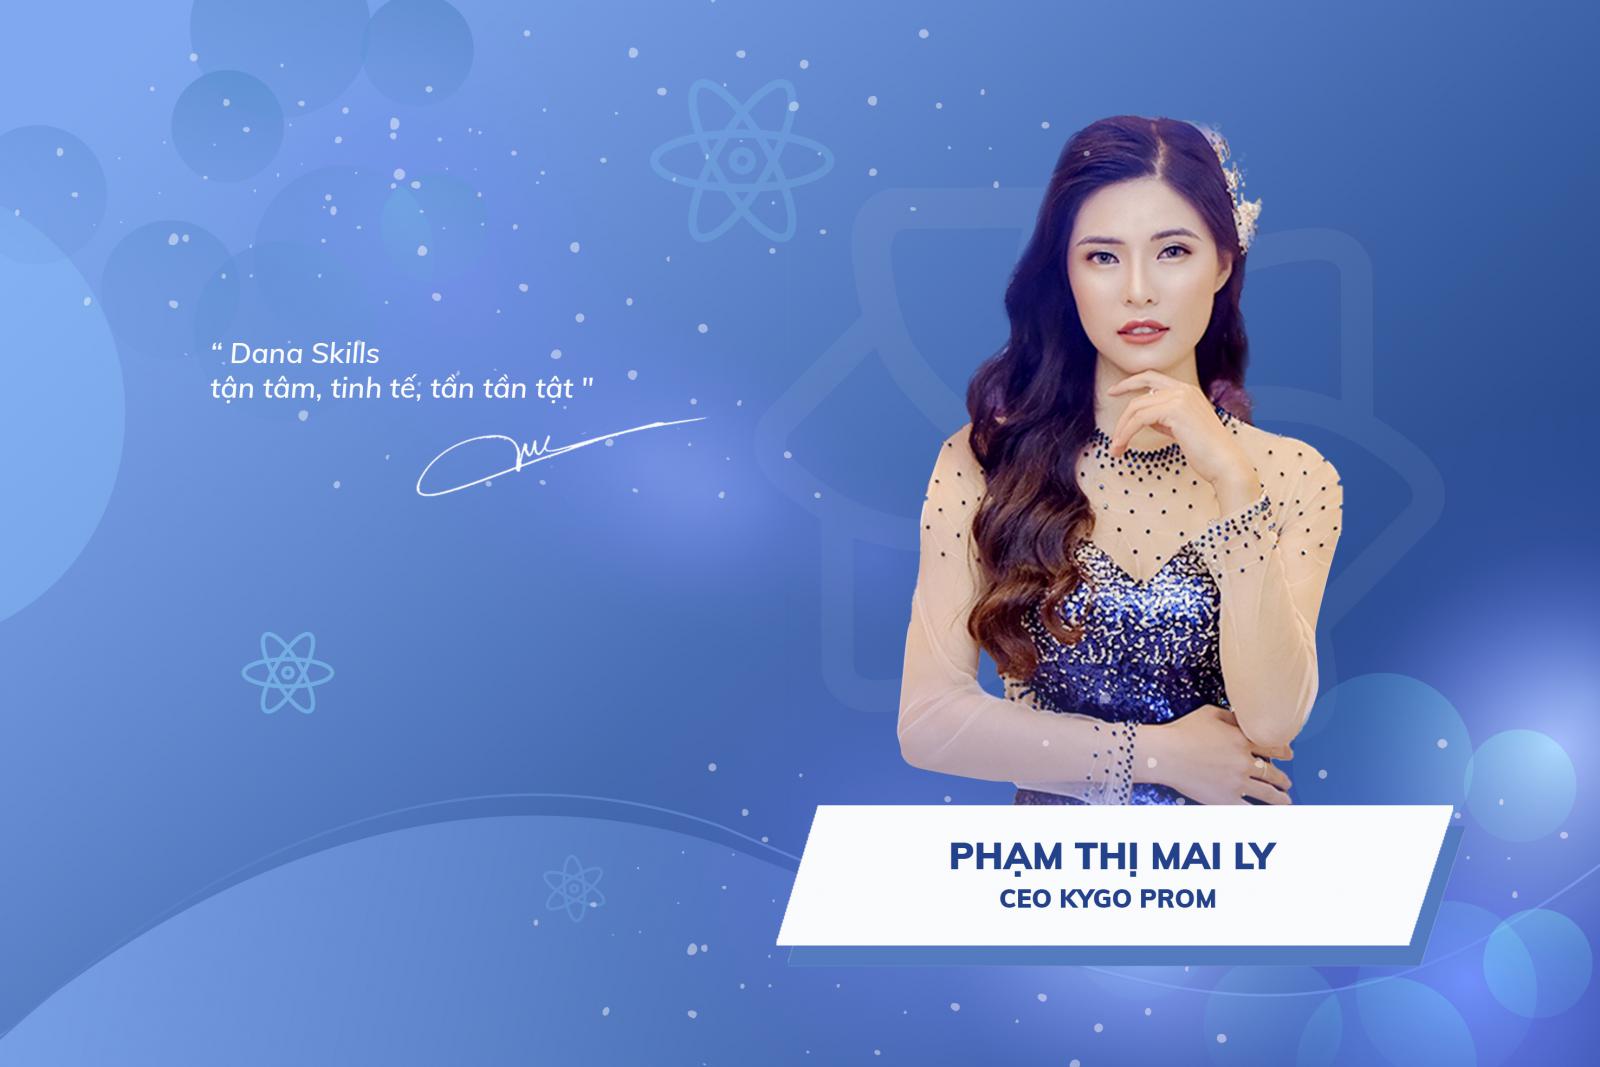 Phạm Thị Mai Ly